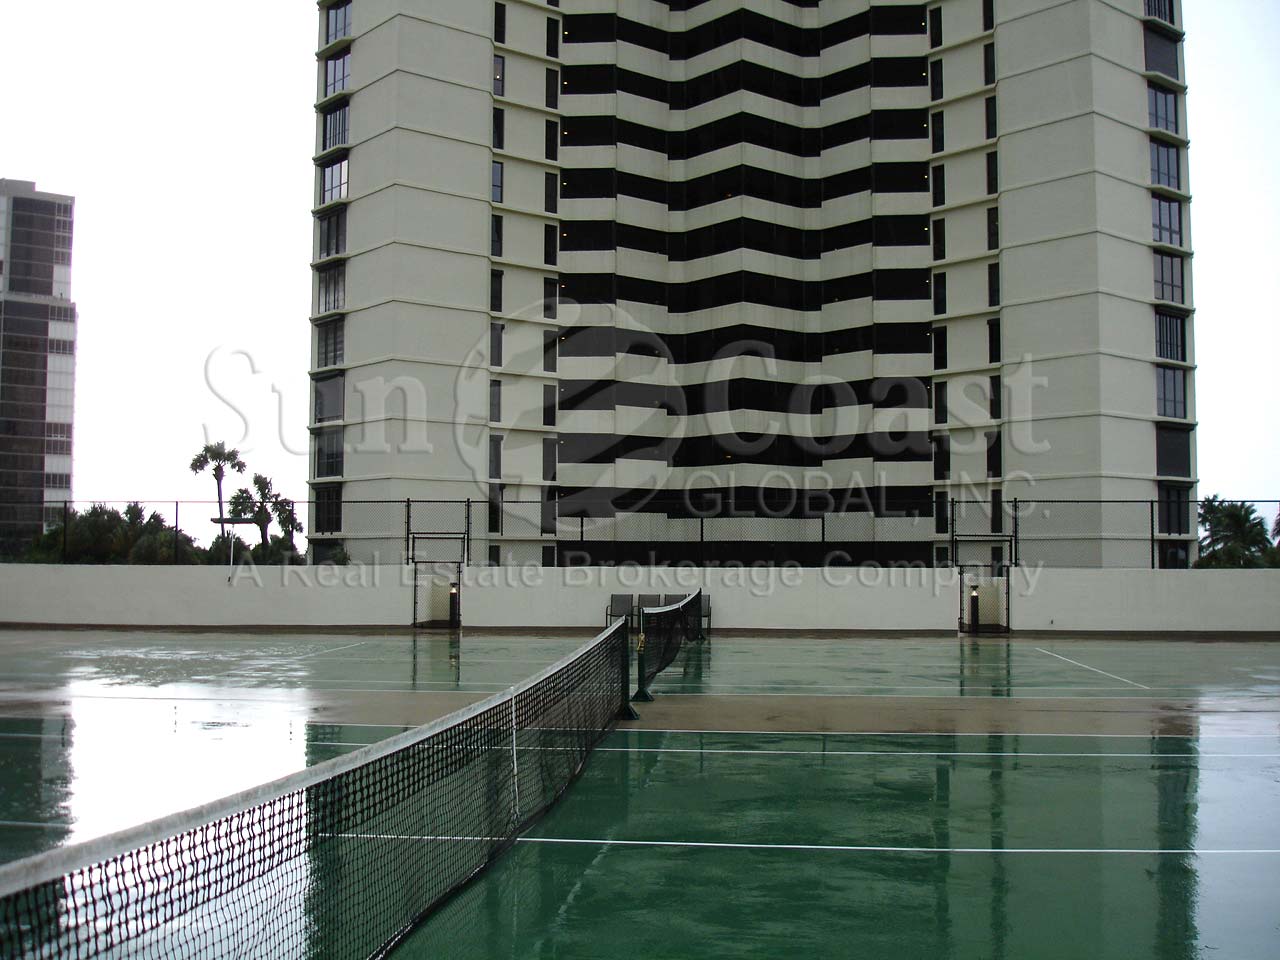 Esplanade Club Tennis Courts